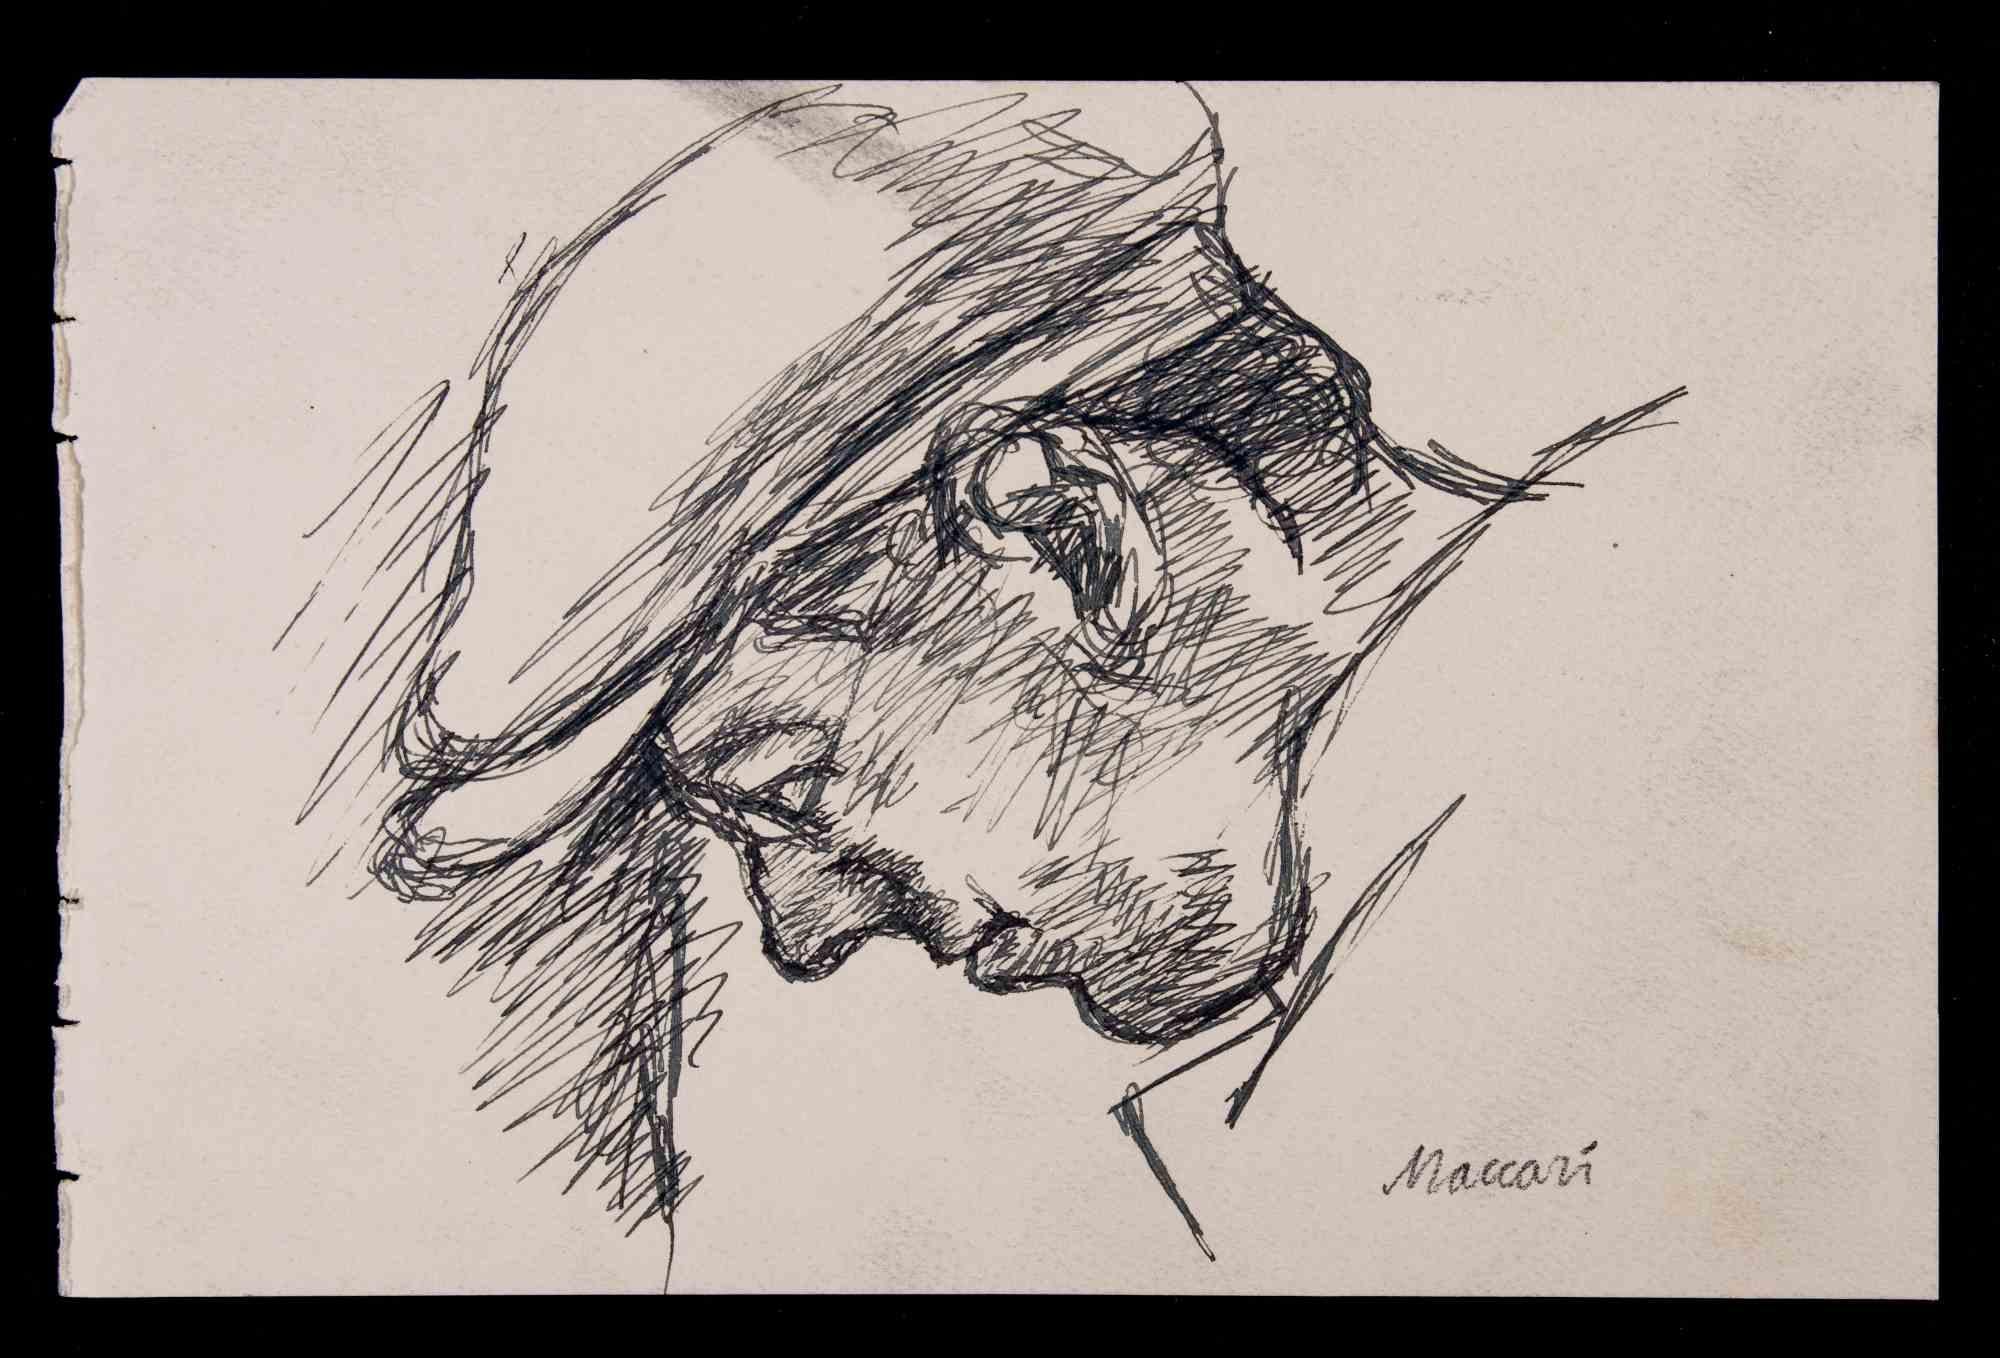 Das Porträt ist eine Federzeichnung von Mino Maccari  (1924-1989) im Jahr 1928.

Handsigniert am unteren Rand.

Guter Zustand auf wenig Papier.

Mino Maccari (Siena, 1924-Rom, 16. Juni 1989) war ein italienischer Schriftsteller, Maler, Graveur und